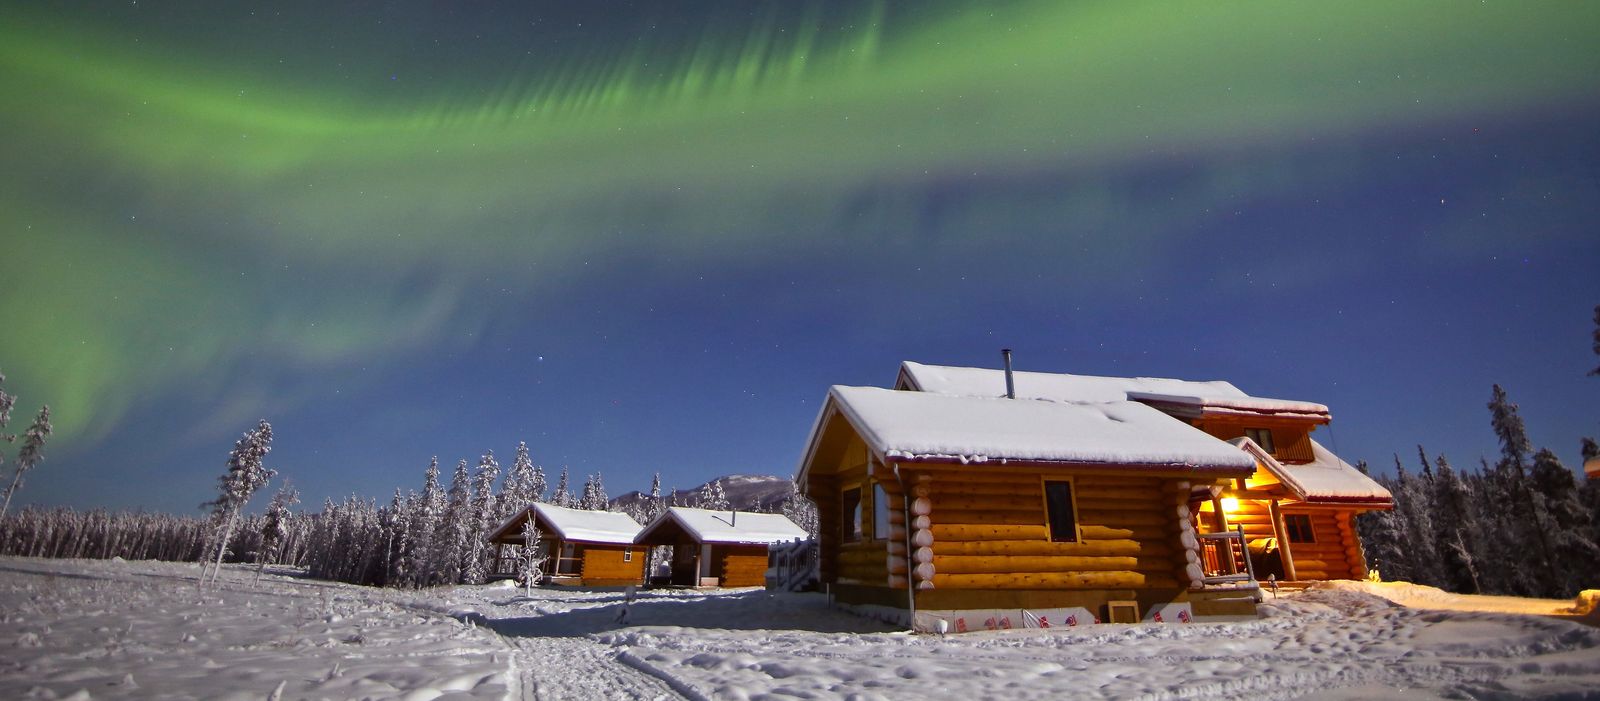 NWT Winter-Promo Yukon, Northern Lights Resort & Spa, Nordlichter über der Lodge